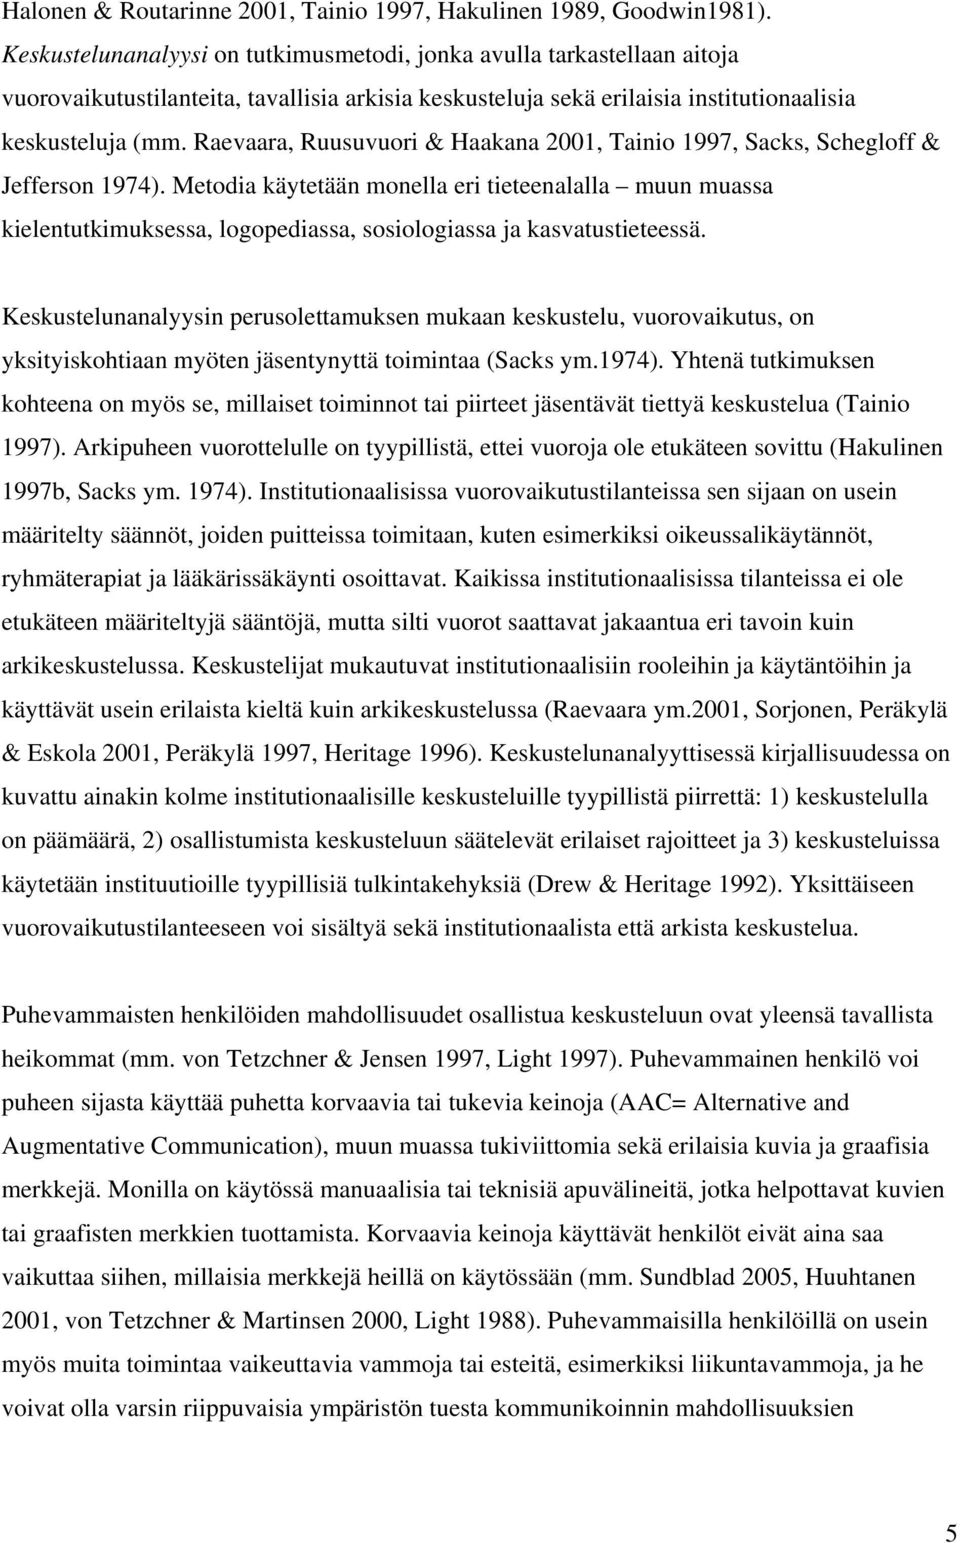 Raevaara, Ruusuvuori & Haakana 2001, Tainio 1997, Sacks, Schegloff & Jefferson 1974).